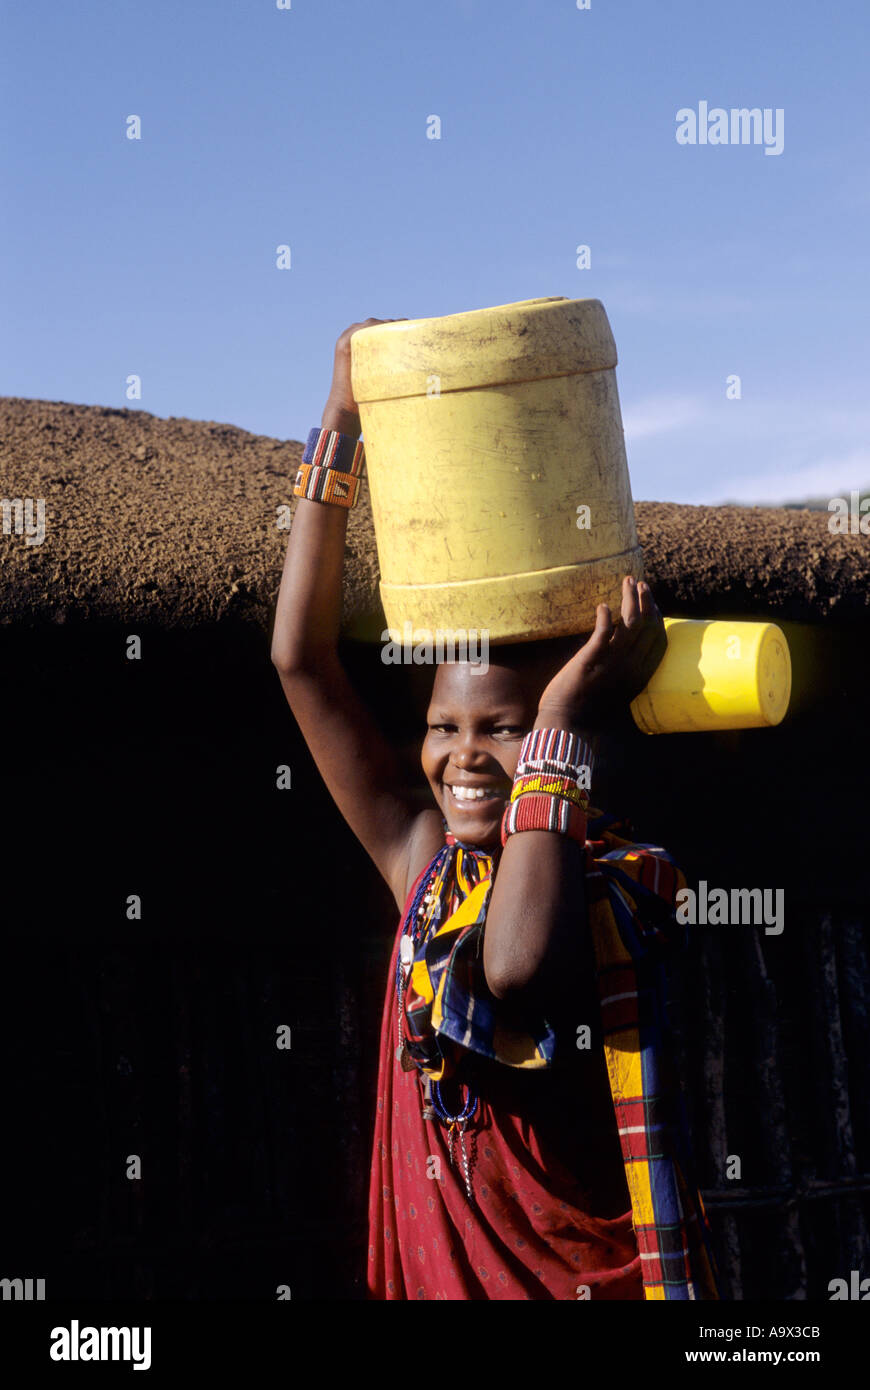 Lolgorian, au Kenya. Manyatta Masaï Siria ; sourire à l'extérieur d'un Massaï maison fortifiée de boue portant un baril de plastique jaune sur la tête. Banque D'Images